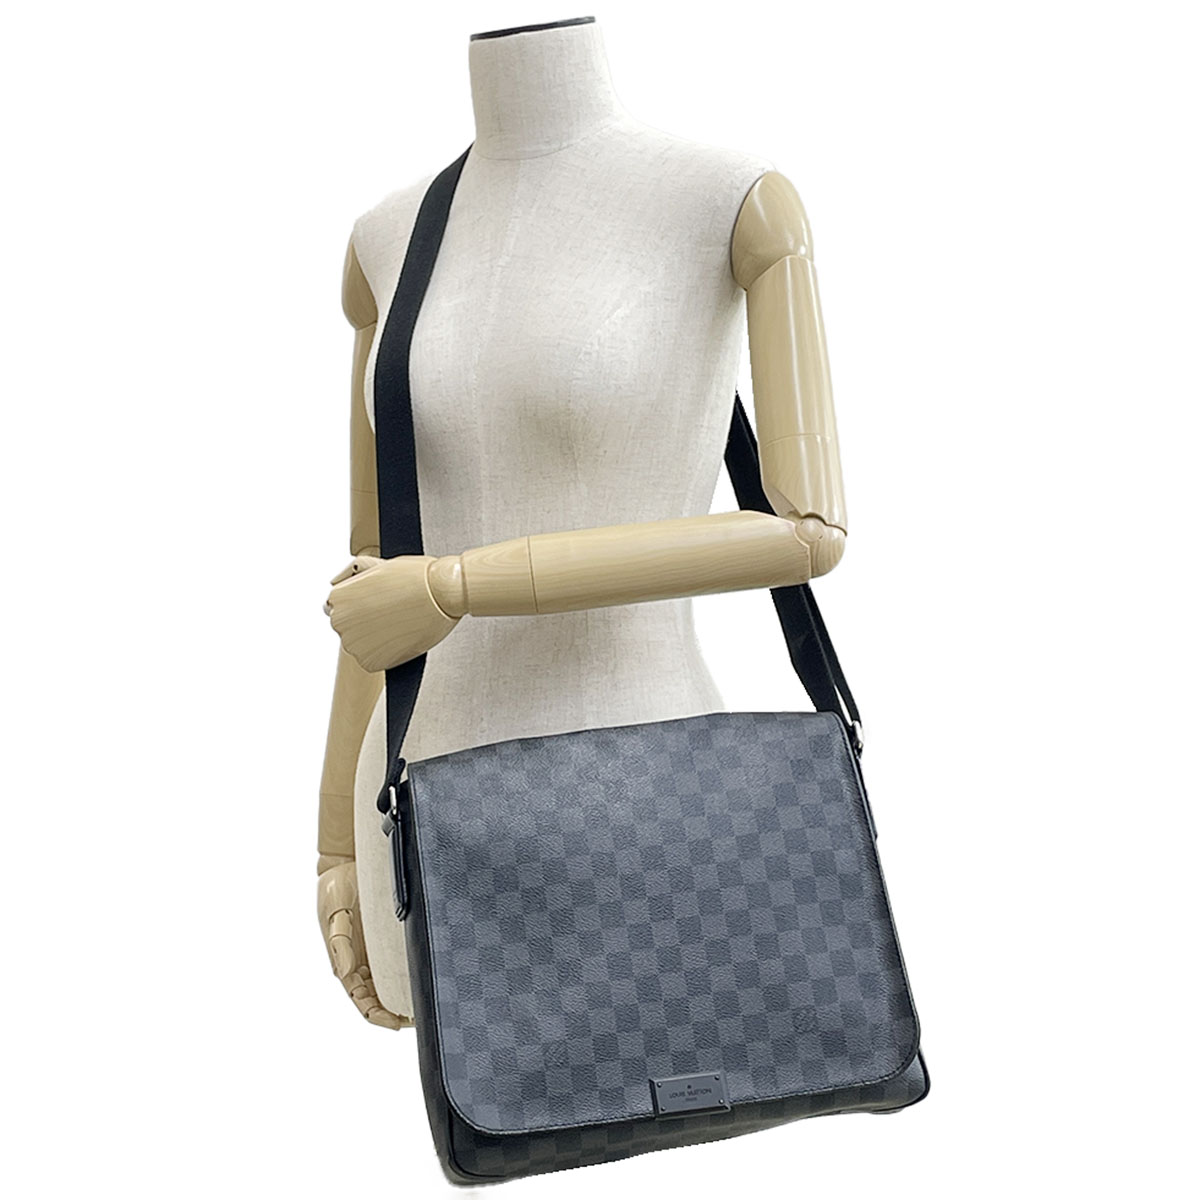 Louis Vuitton Damier Graphite Canvas District MM Bag - clothing